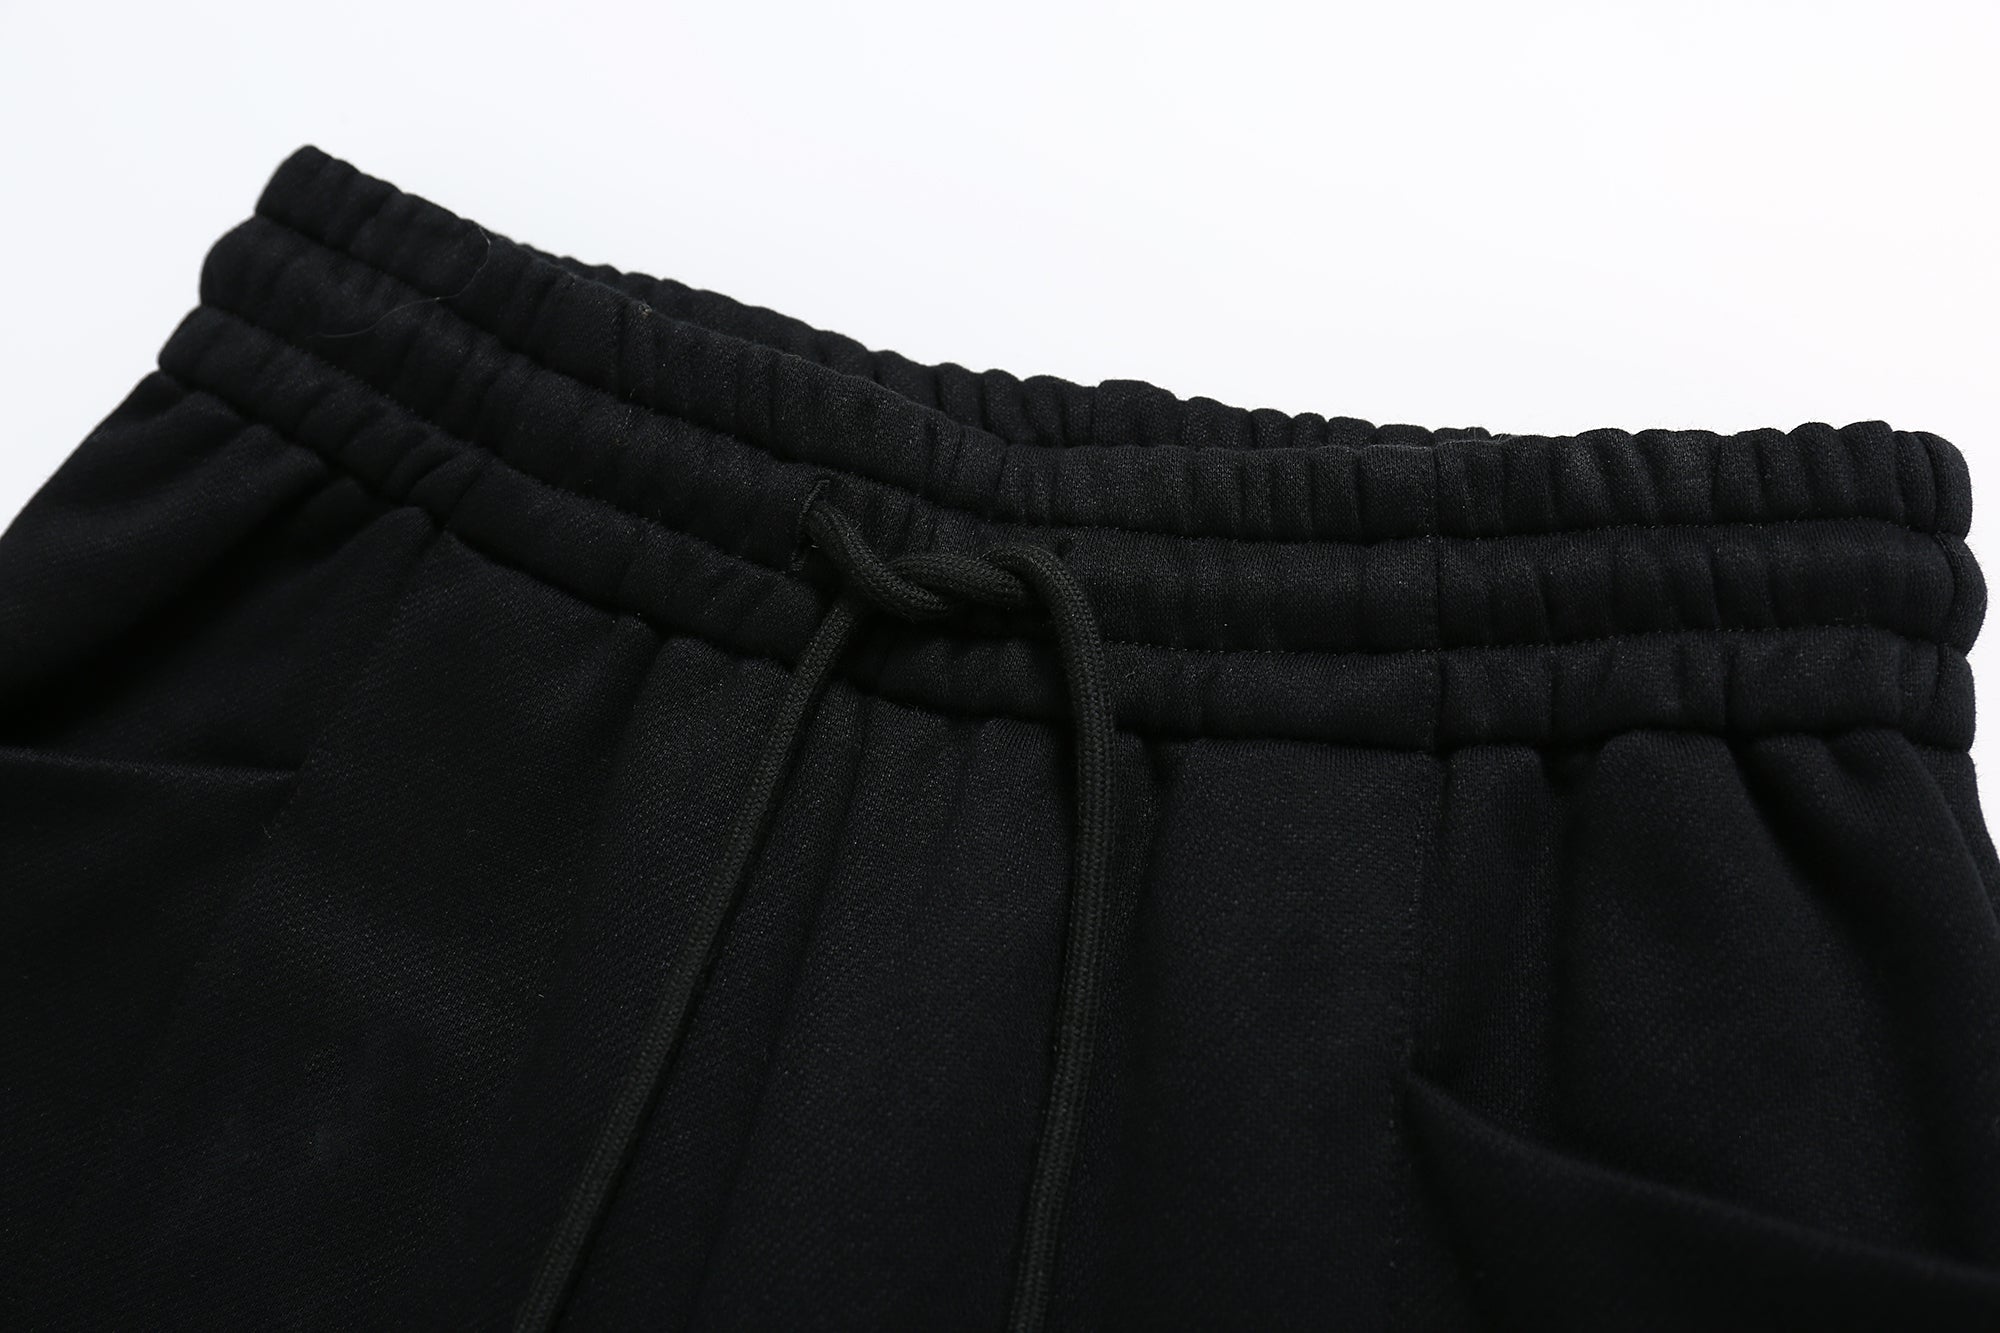 SOMESOWE Black Cropped Sweatpants | MADA IN CHINA